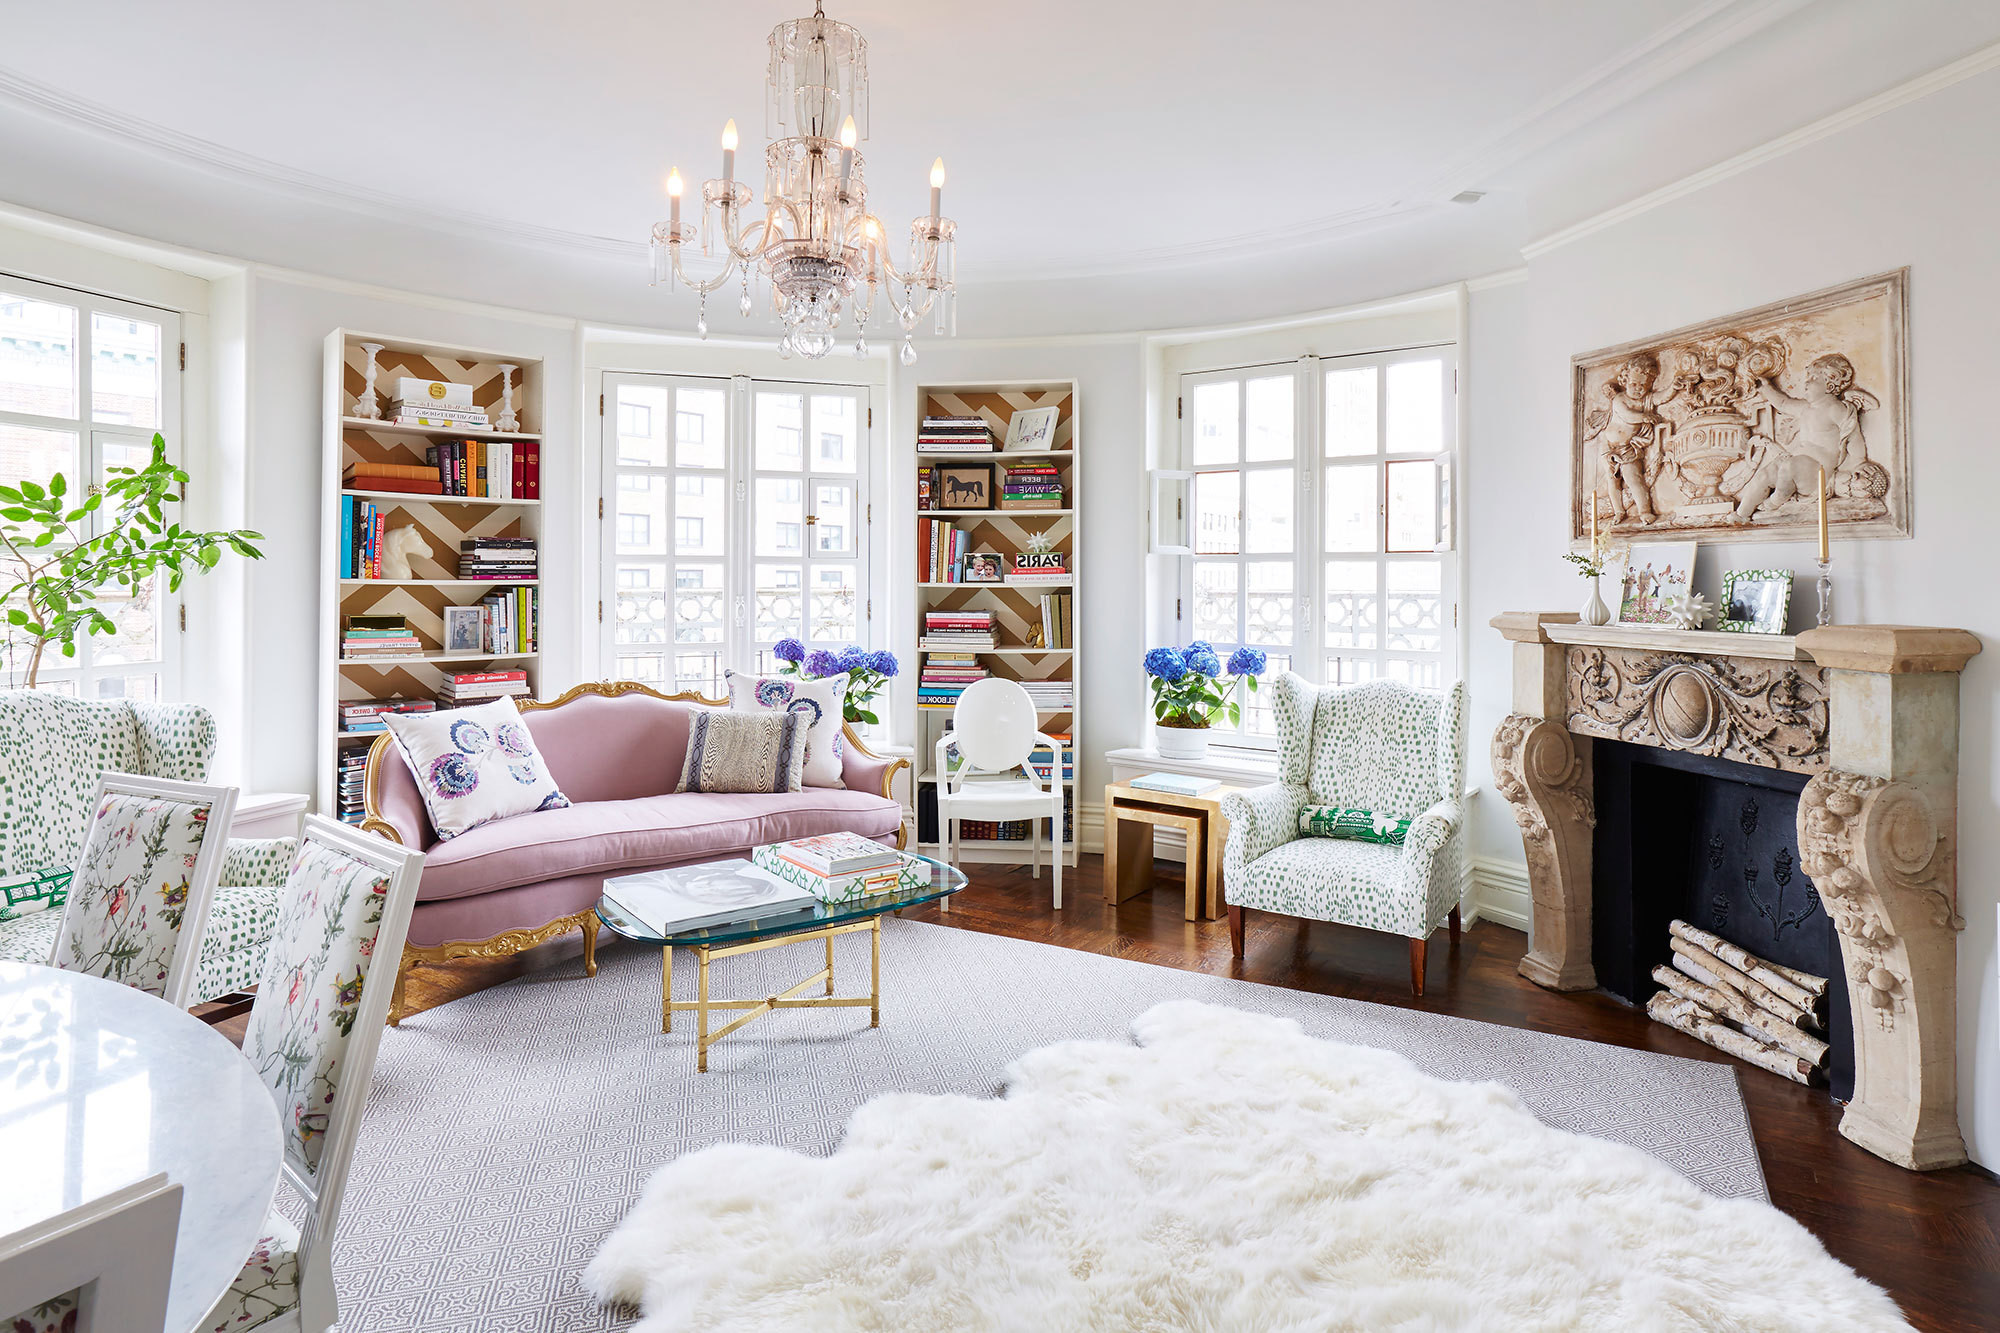 Paris Themed Living Room Decor Ideas | Roy Home Design